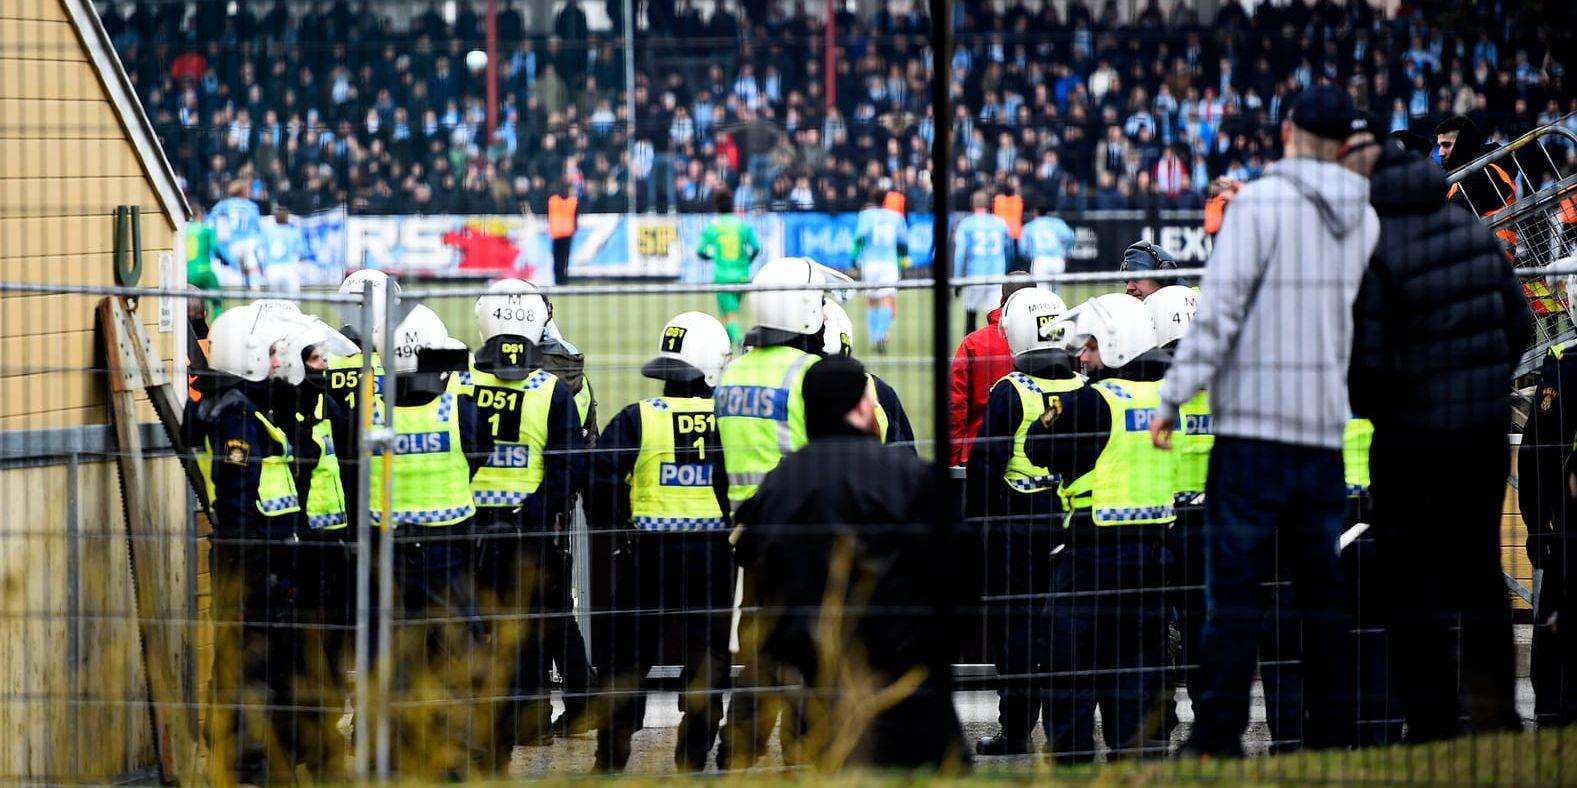 Sju män som åtalades för våldsamt upplopp, i samband med en fotbollsmatch mot danska Bröndby i Malmö i fjol, frias av Malmö tingsrätt. Arkivbild.